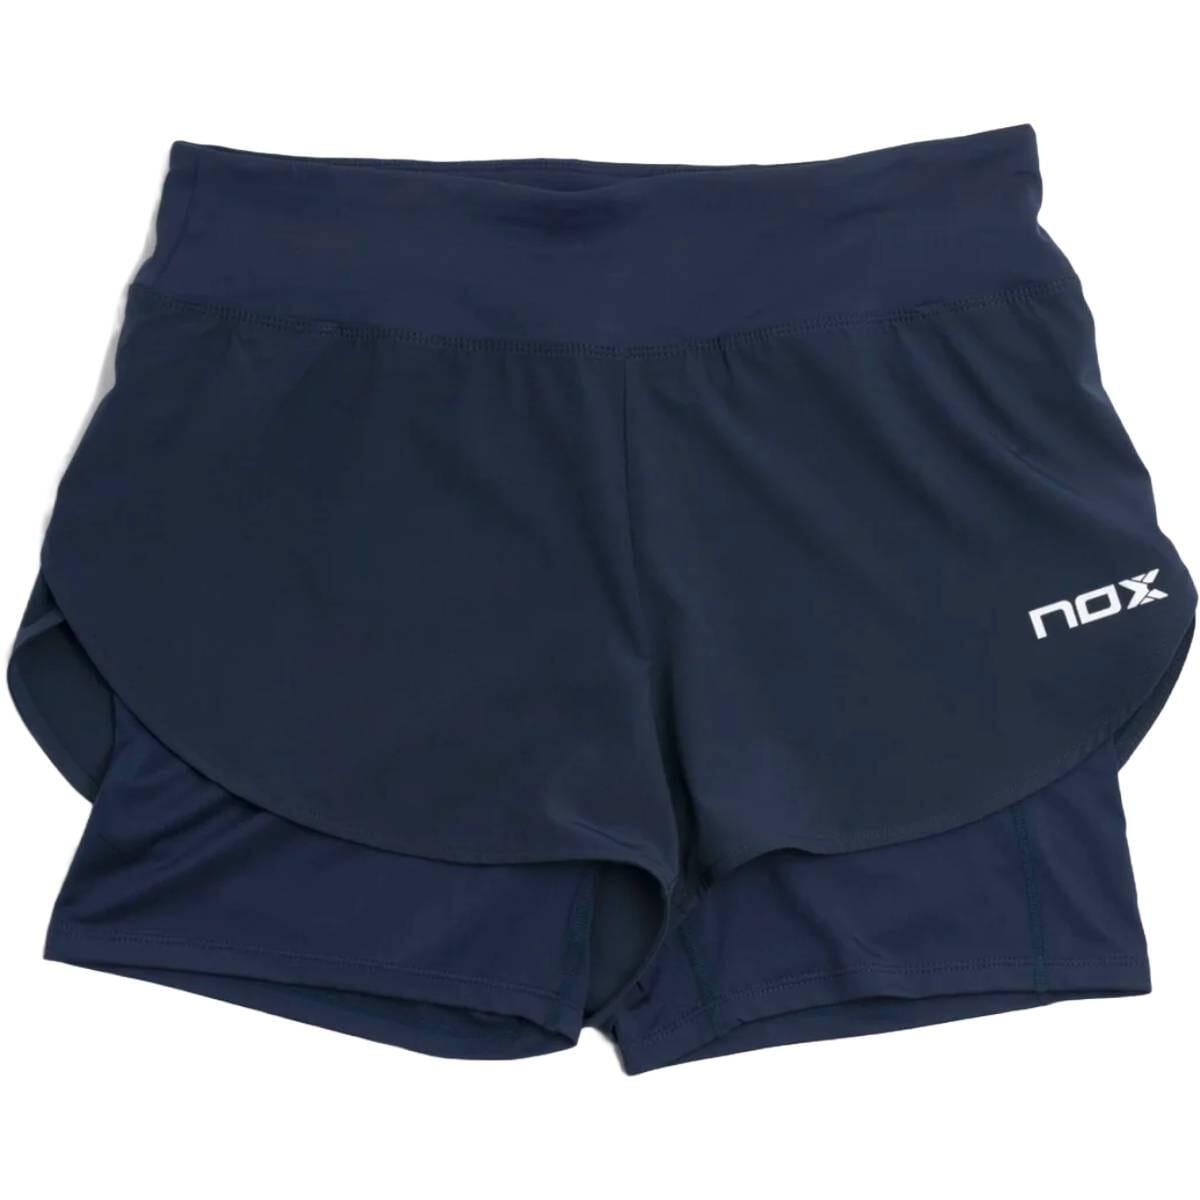 NOX Pro Shorts Navy Dame